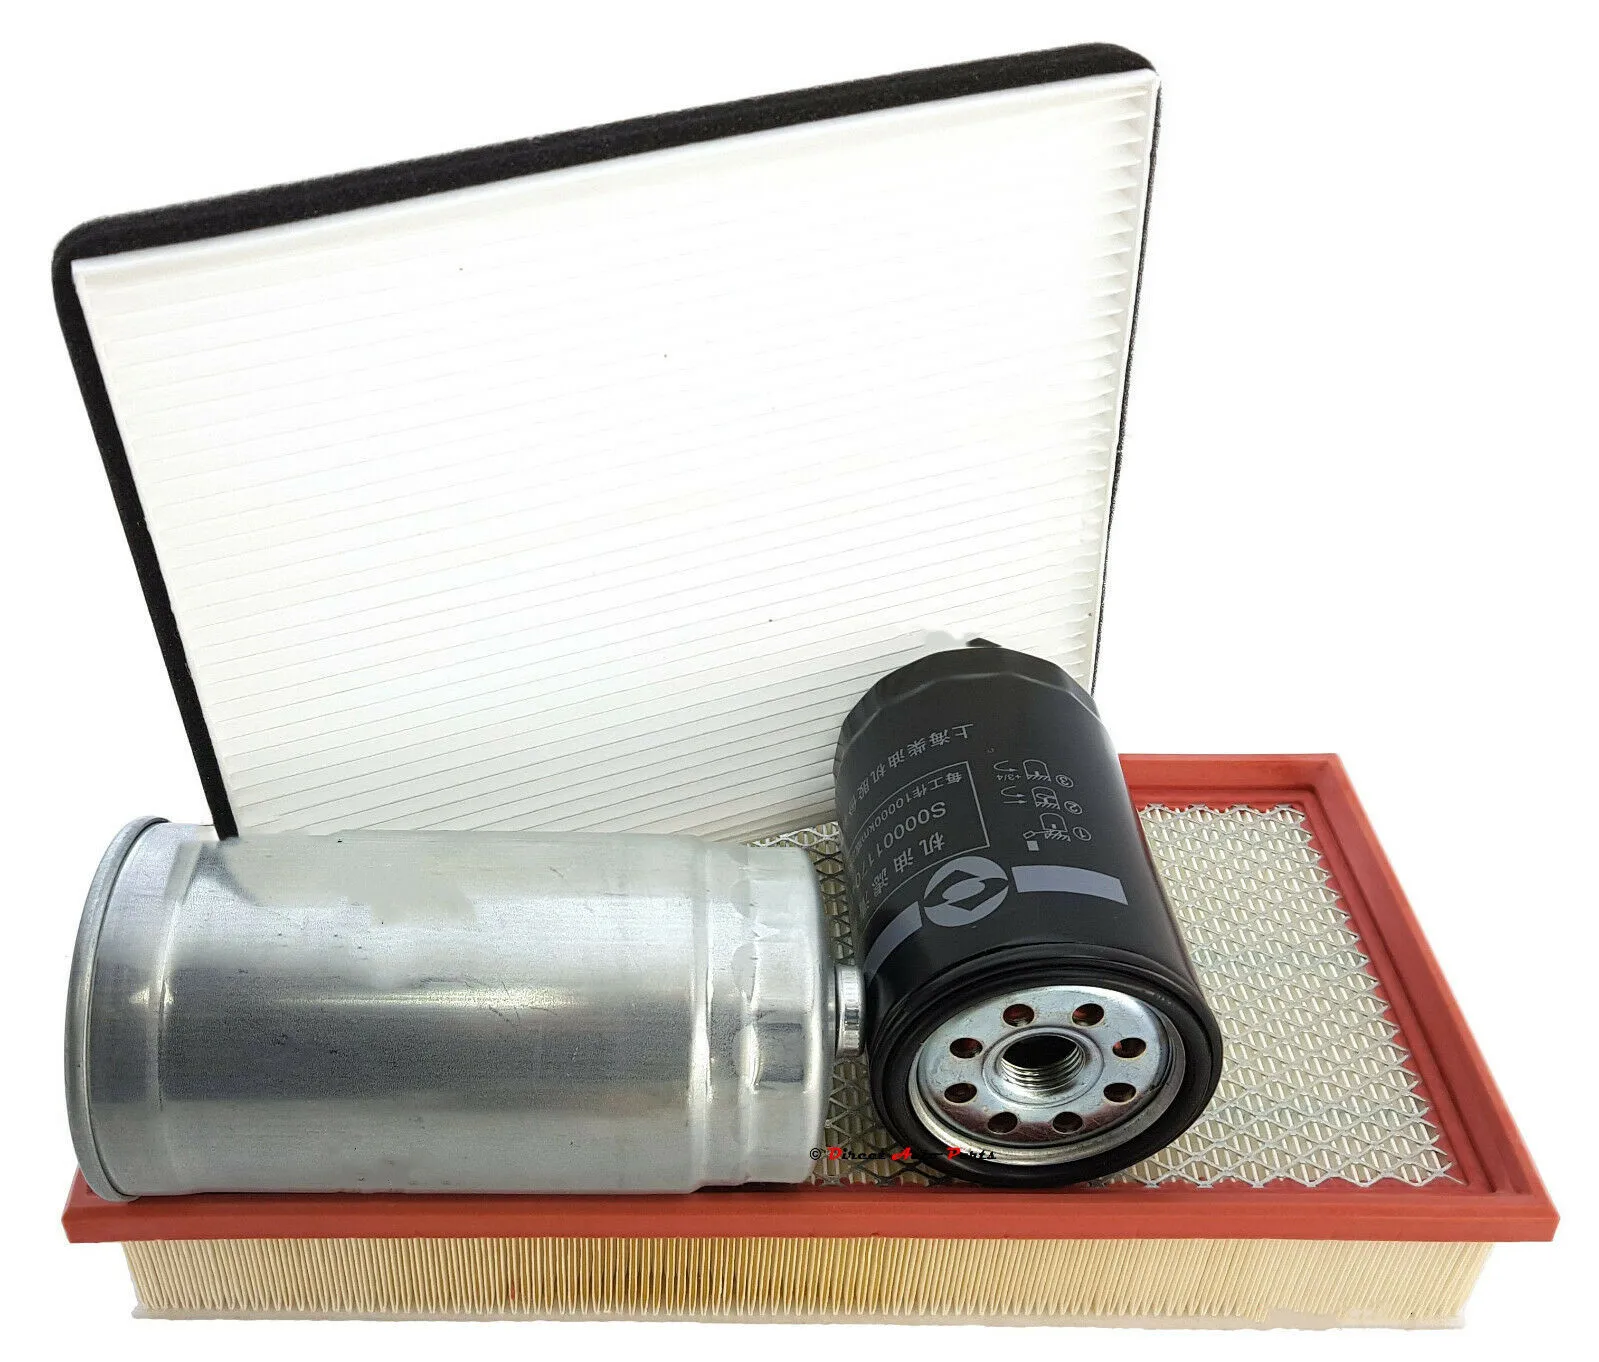 Сервисный комплект масляного, воздушно-топливного салонного фильтра OEM-качества для фургона LDV V80 объемом 2,5 л с турбодизелем 2013 года выпуска